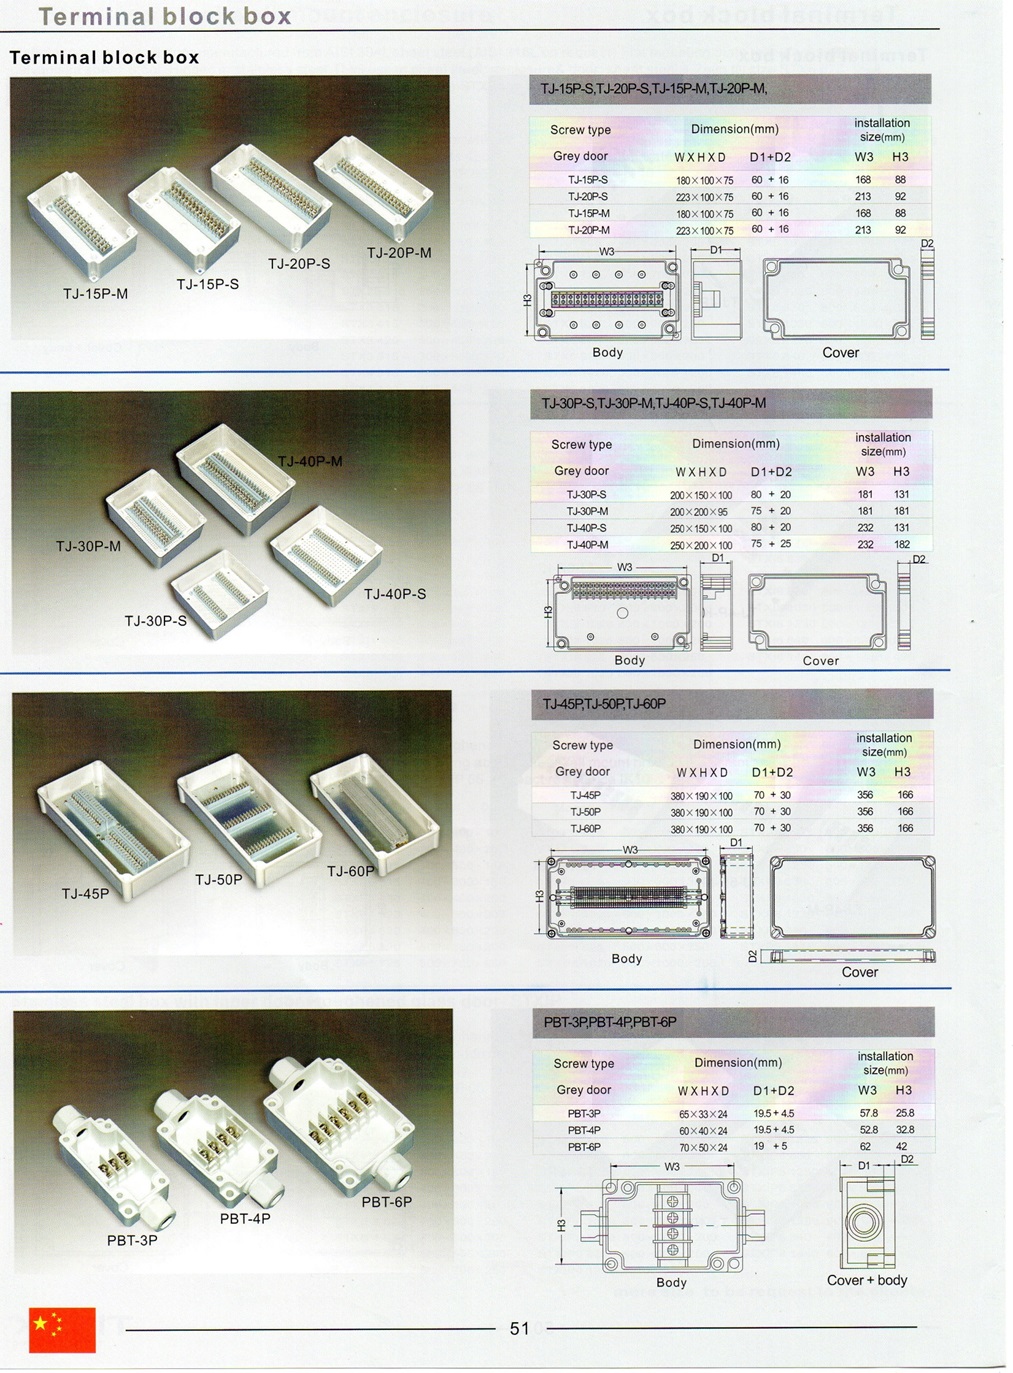 IP 66-67 terminal box,กล่องเดินสายไฟ, กล่องต่อสายไฟ, terminal block box, boxco, Fibox, Hi-box, กล่องต่อสายไฟพลาสติกกันน้ำ, กล่องต่อสายไฟ4เส้น